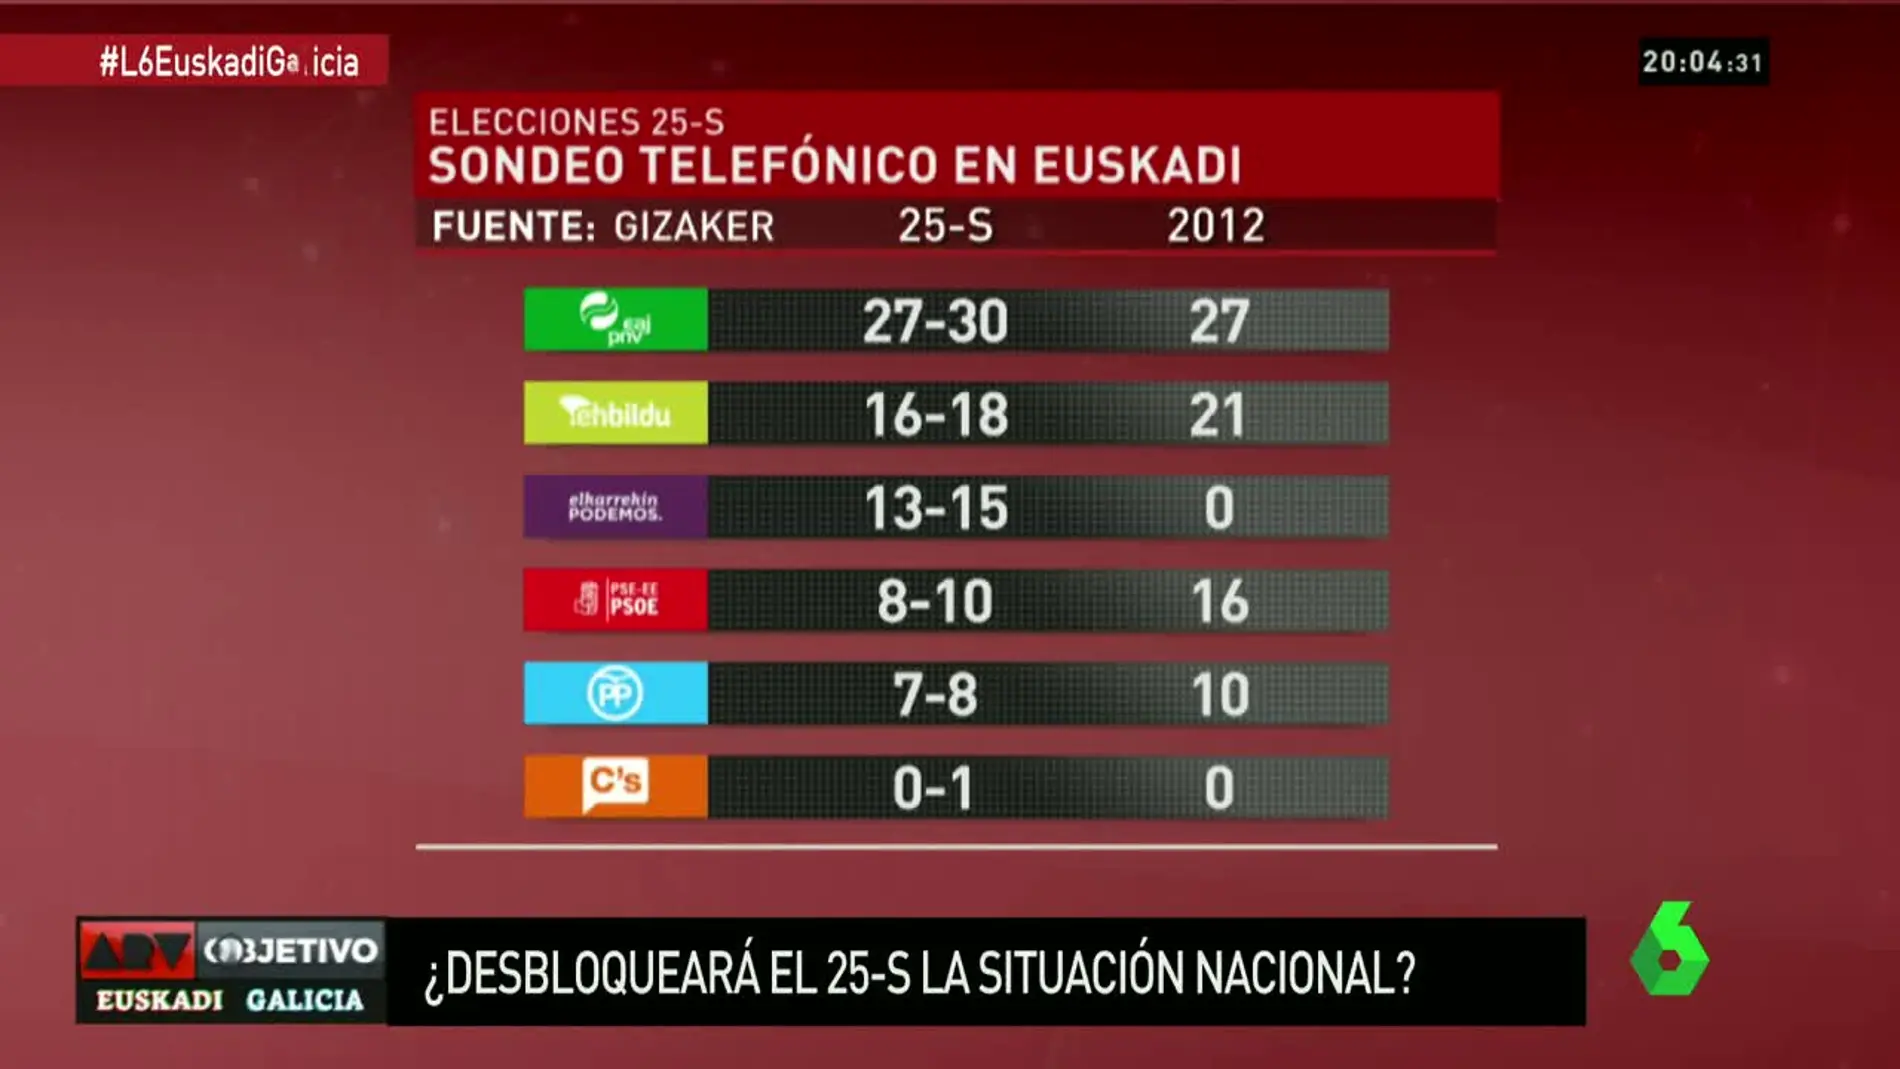 Sondeo a pie de urna elecciones Euskadi 25S